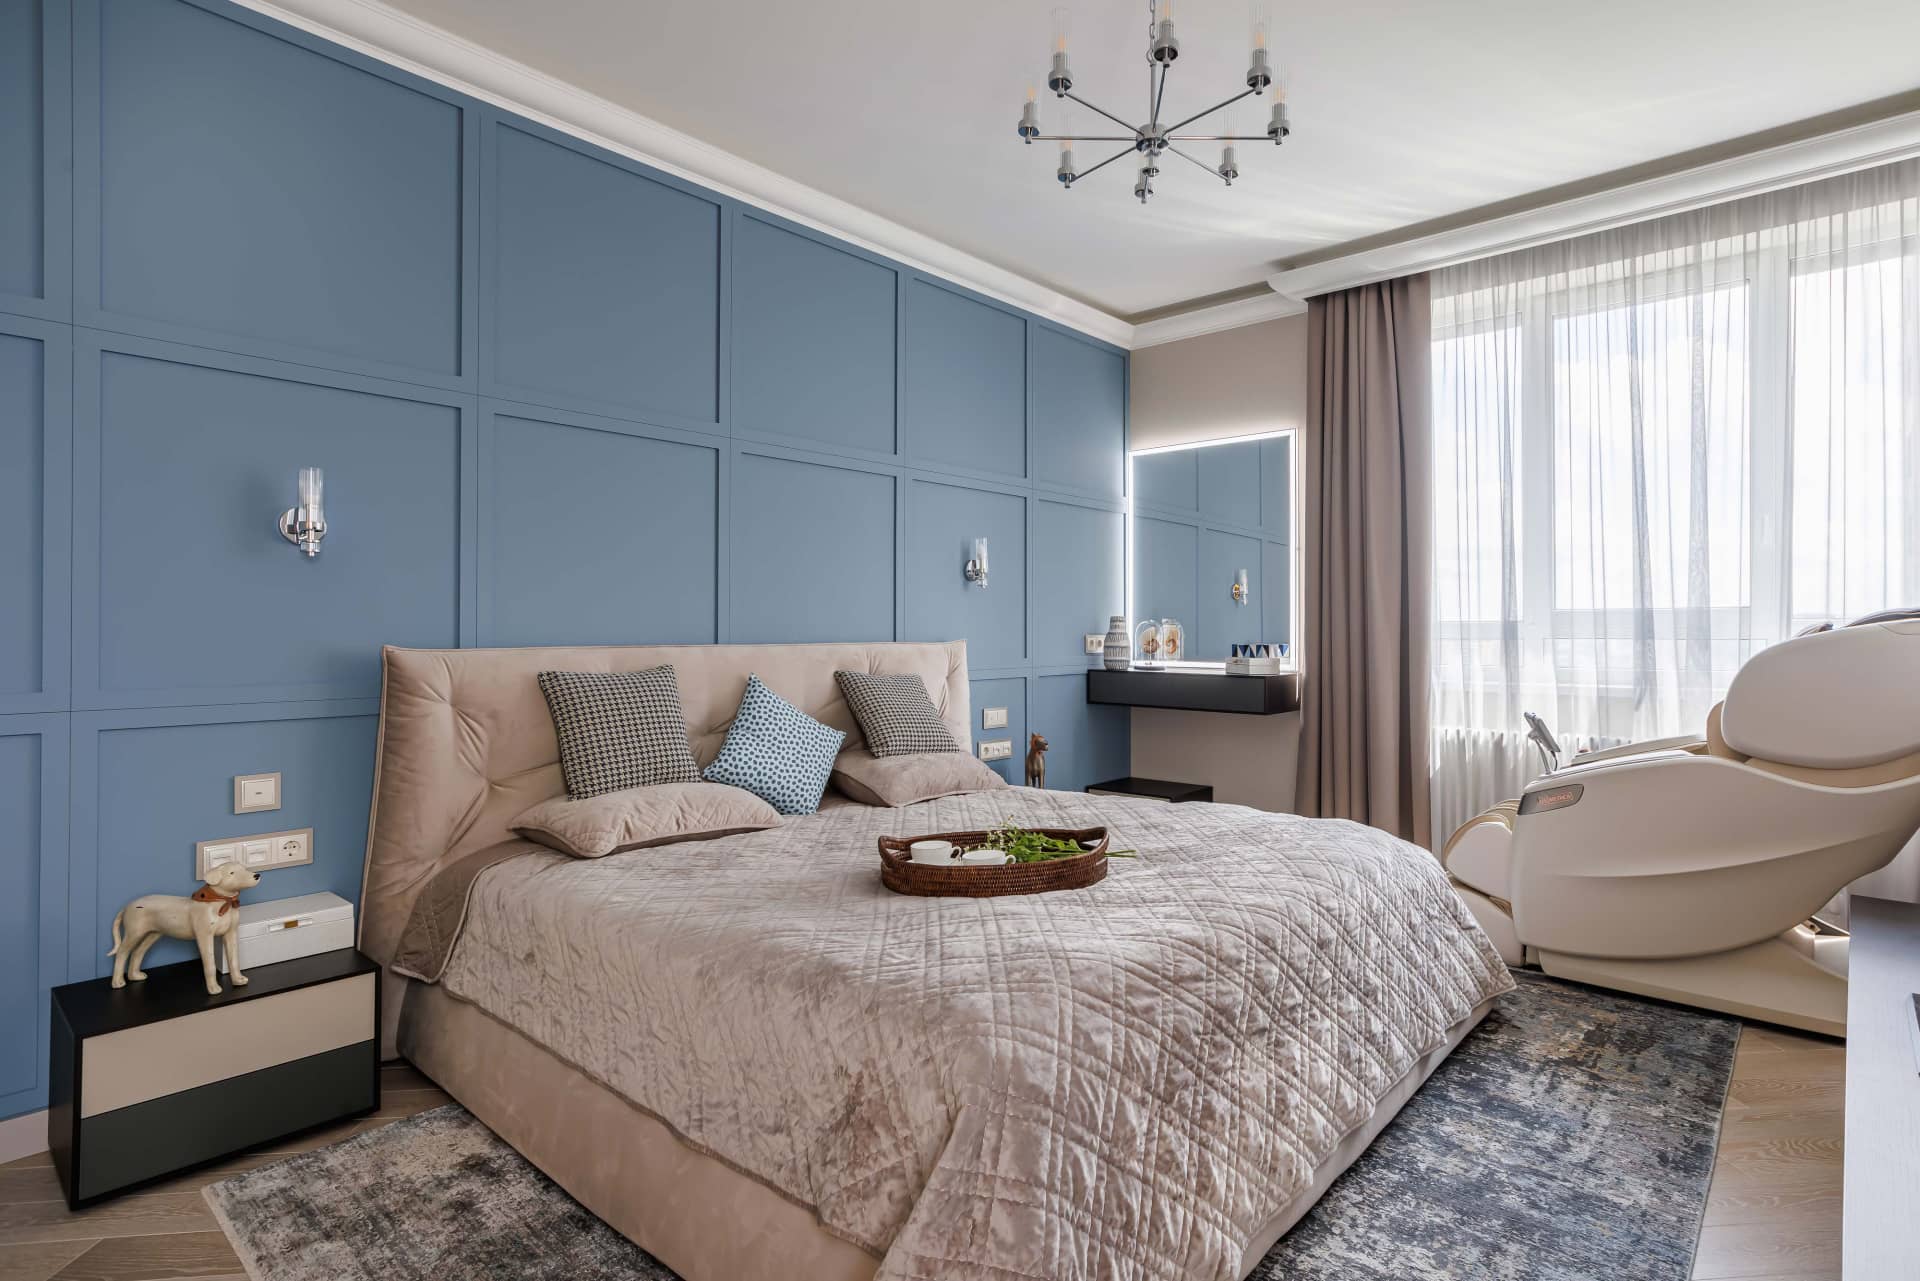 Оформление интерьера спальни в синий цвет. Фото № 70680.